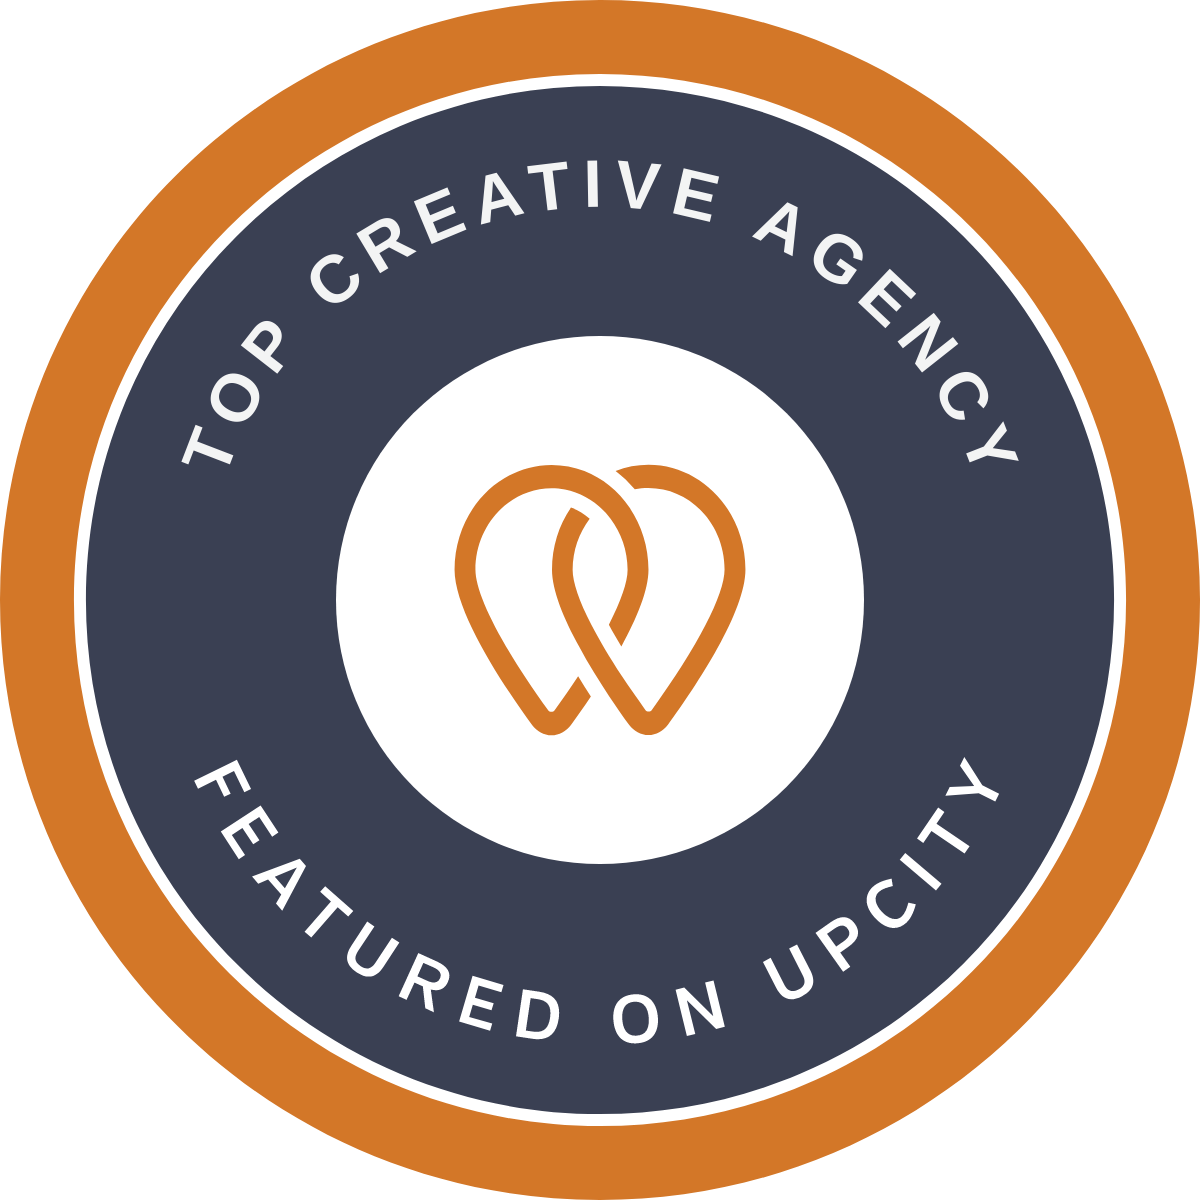 Hamilton, Ontario, Canada Agentur CodeMasters Agency gewinnt den Top Creative Agency-Award